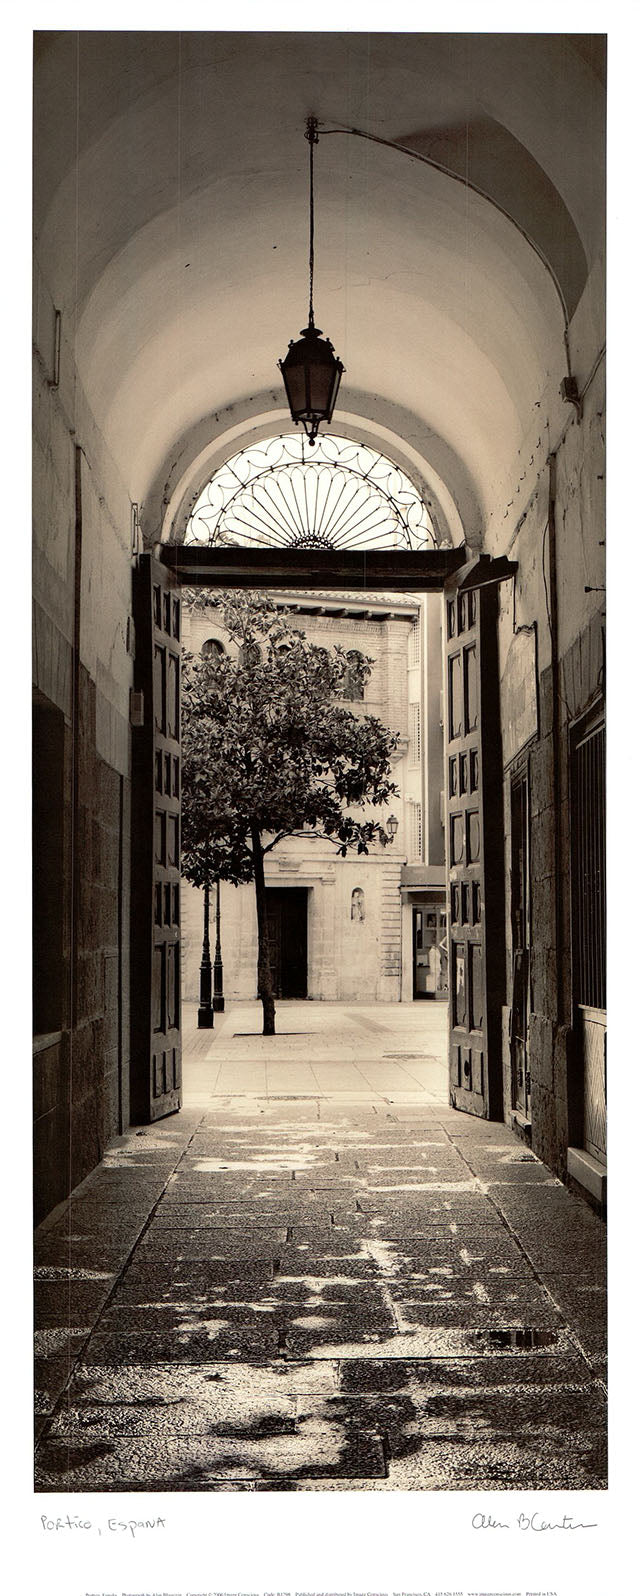 Portico, Espana by Alan Blaustein - 9 X 22 Inches (Art Print)